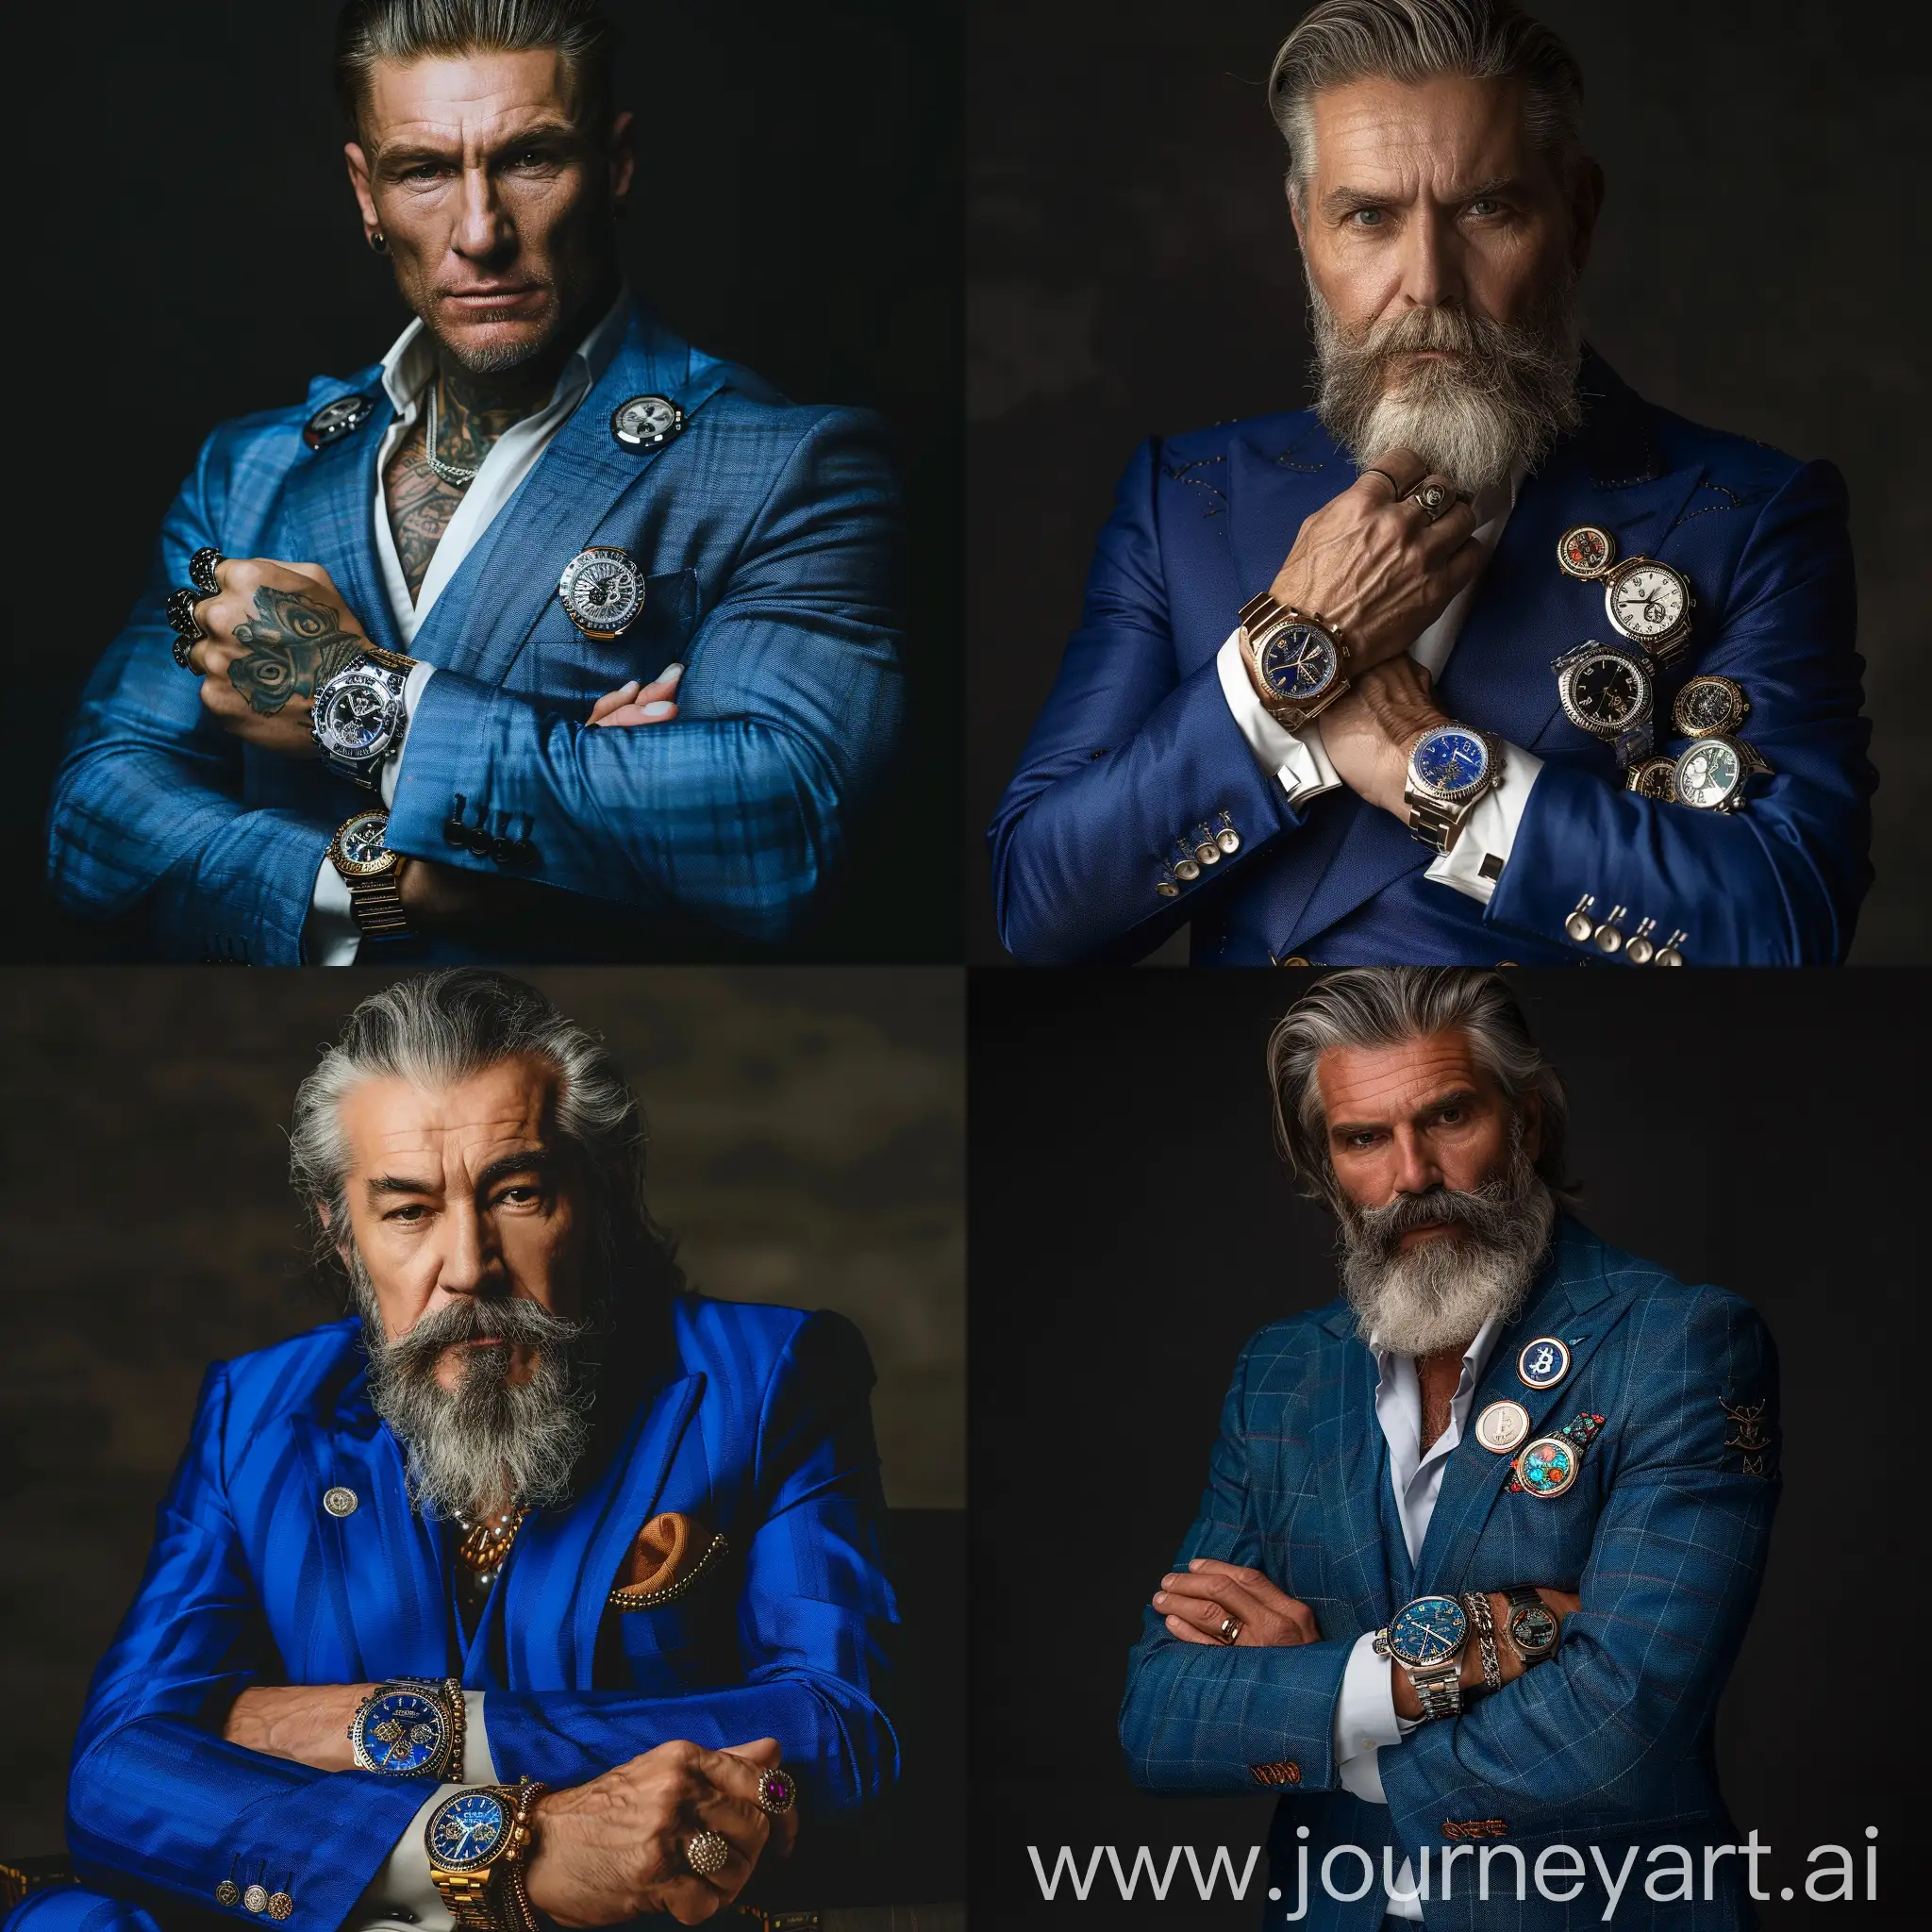 Макс Максбетов самый богатый криптоинсвестер в мире, полное телосложение, синий дорогой костюм, несколько очень дорогих часов на руке, шикарная дорогая прическа, старый 40 лет